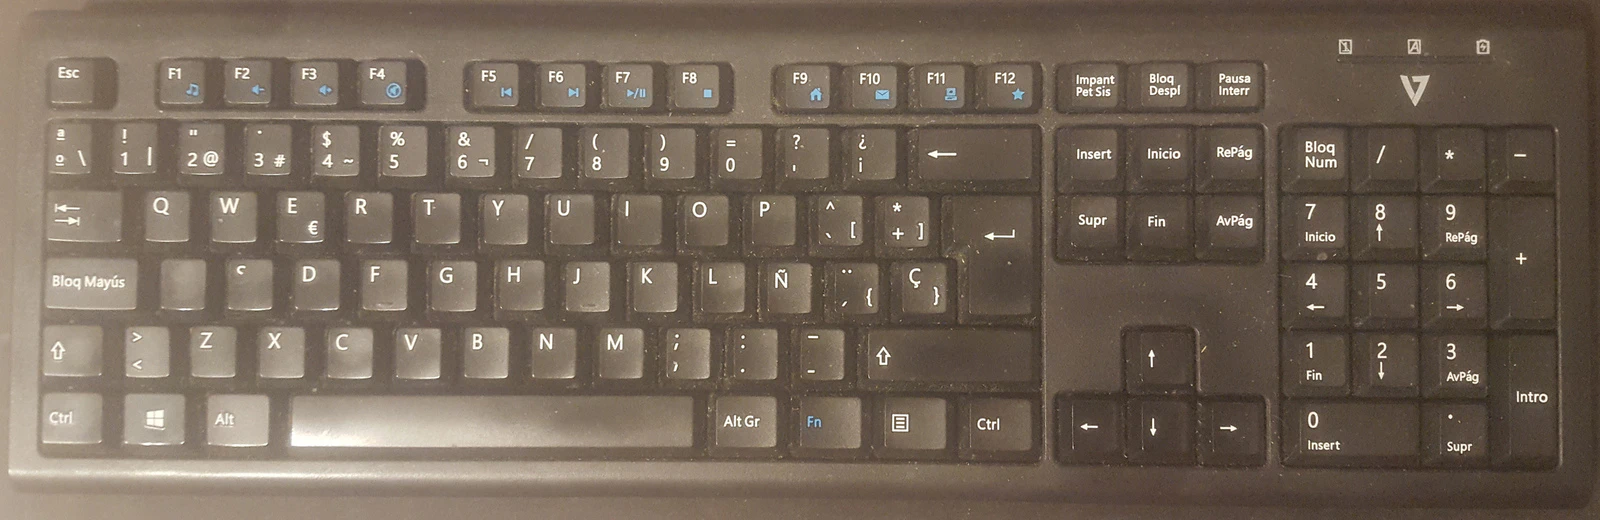 Cómo debo limpiar el teclado del ordenador? - Grupo Sileb